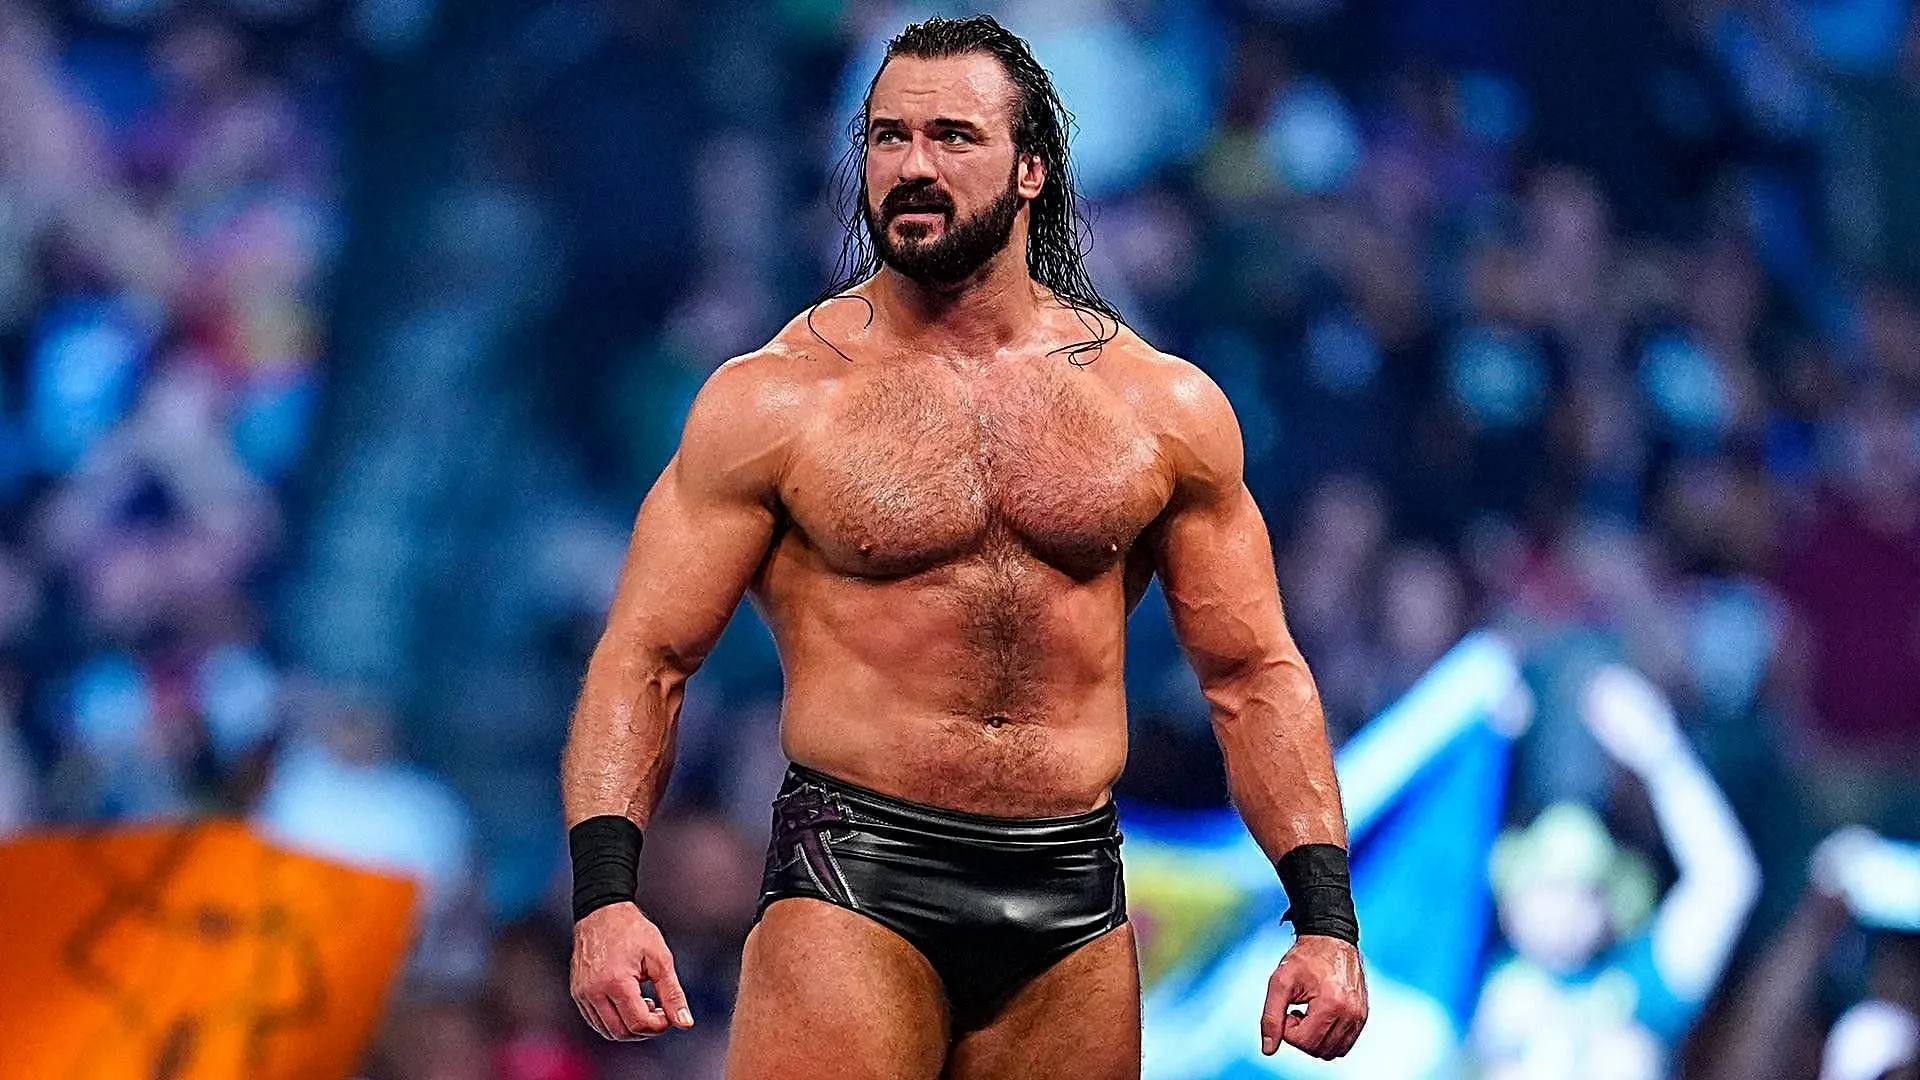 WWE SmackDown: WWE SmackDown में बड़े चैंपियनशिप मैच से पहले Drew McIntyre ने अपनी नई टैग टीम का बताया नाम, दुश्मनों की हालत होगी खराब